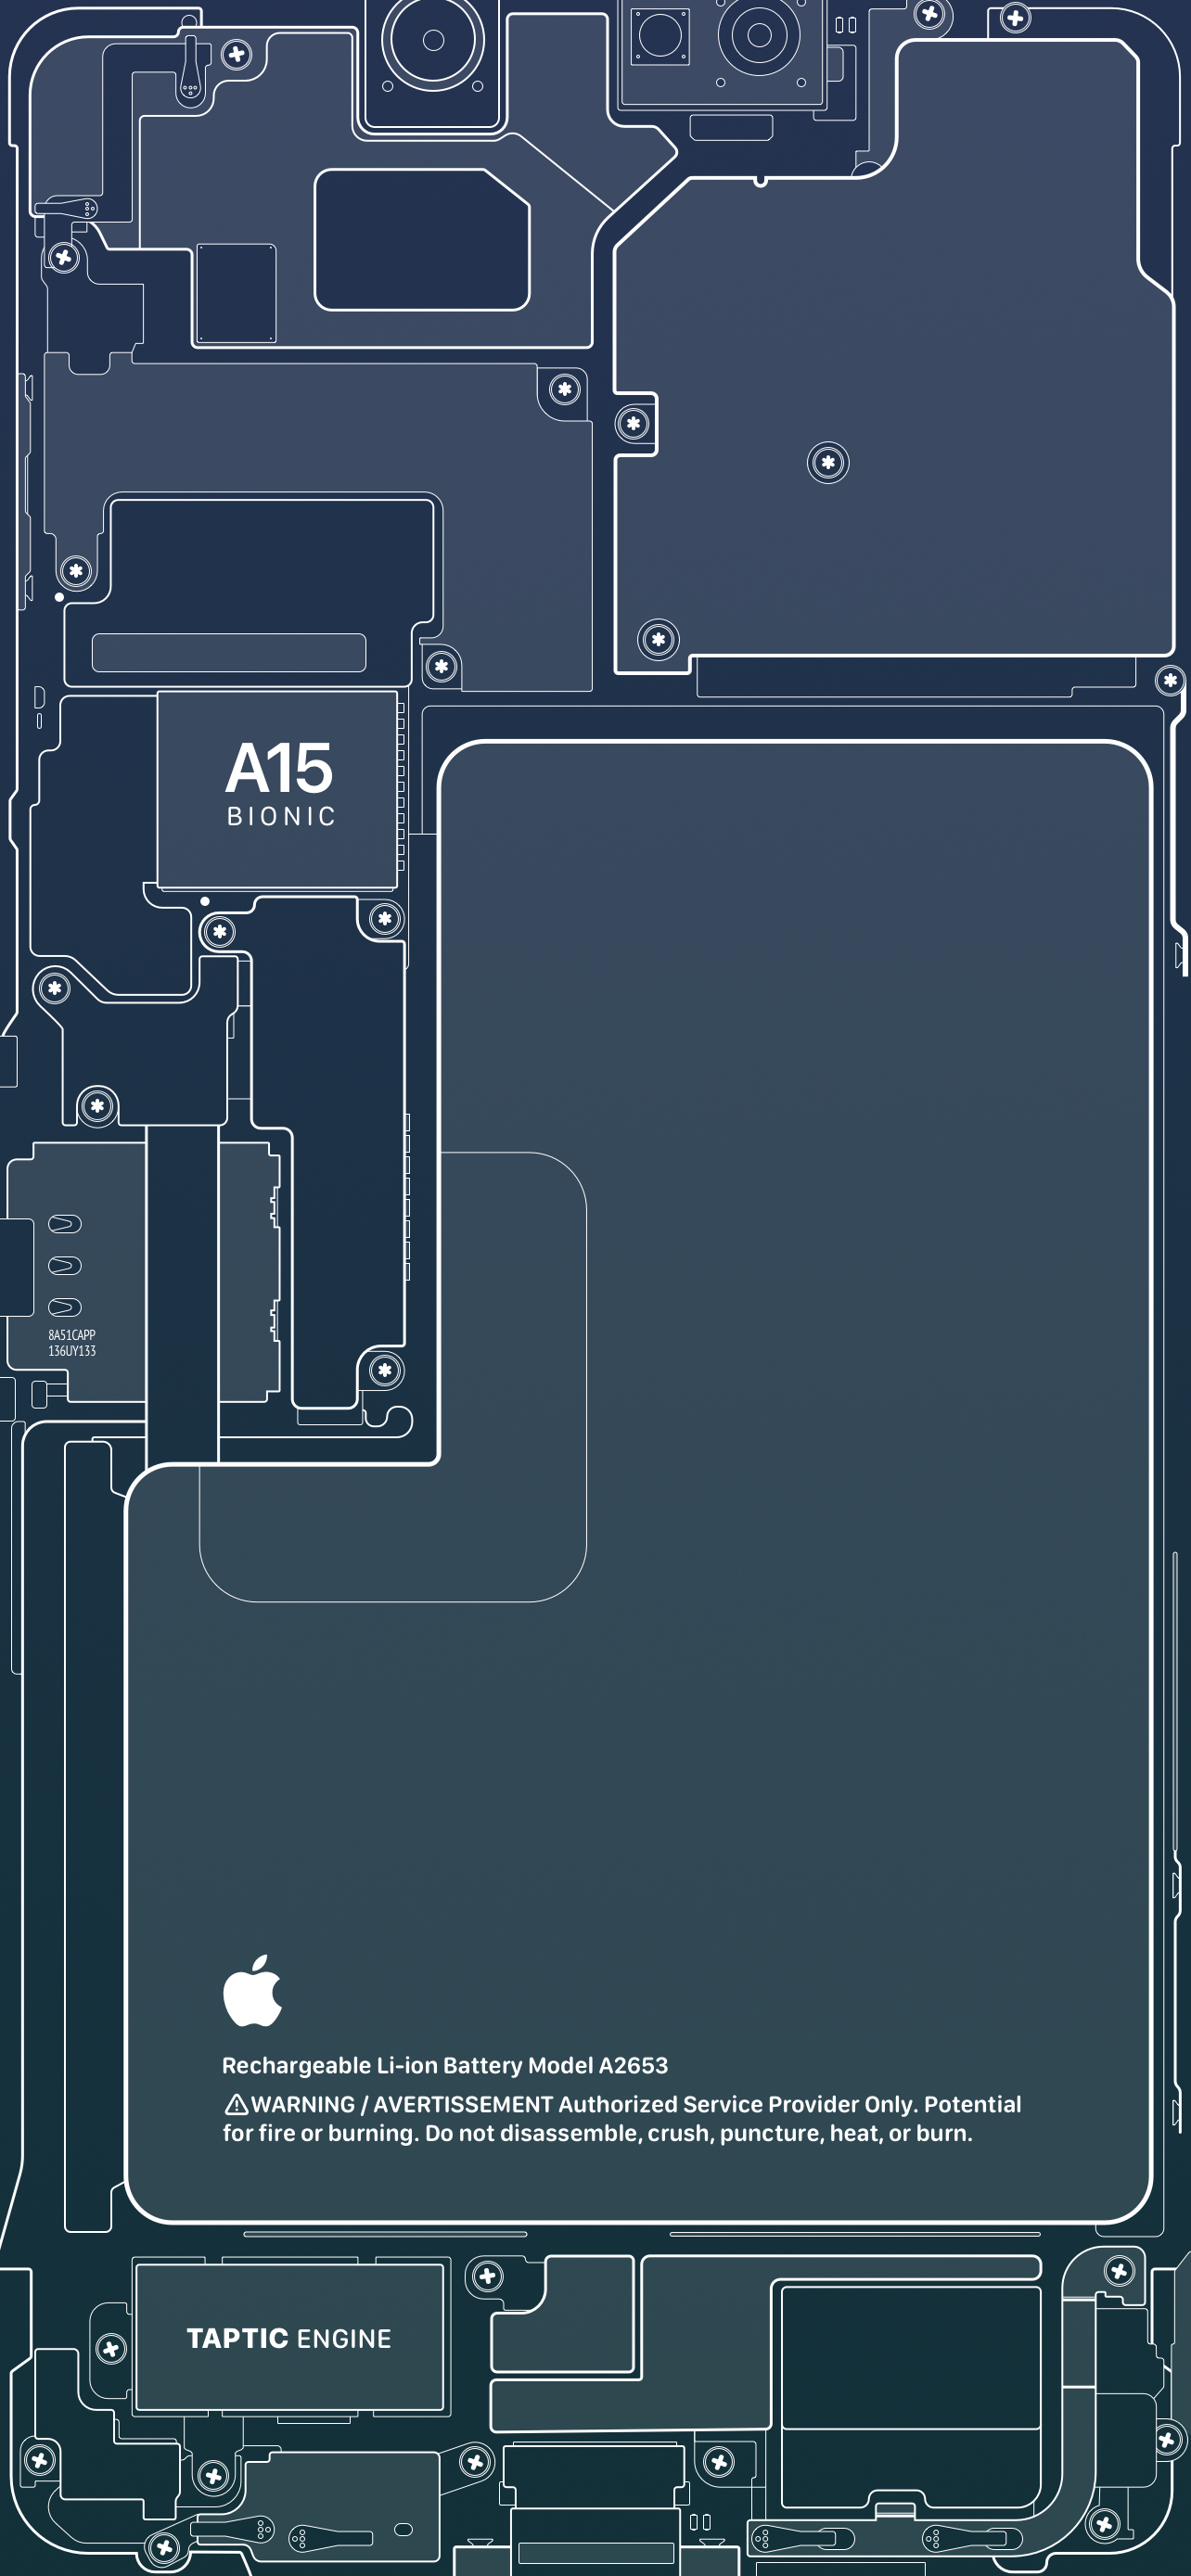 Mời anh em tải về bộ hình nền IOS 13, iPadOS và Mac Catalina